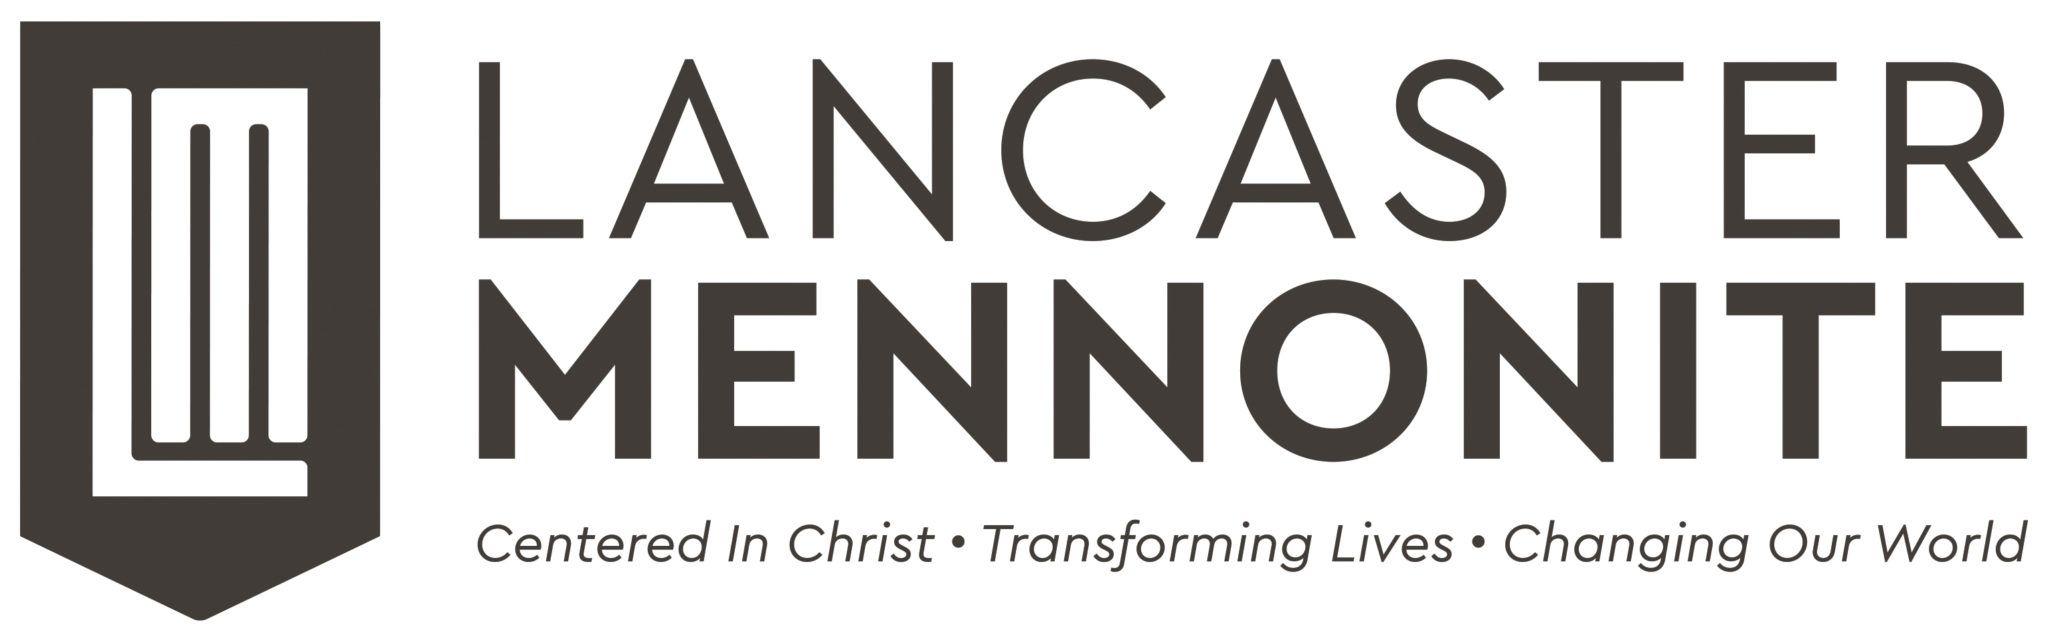 Mennonite Logo - Brand Assets | Lancaster Mennonite